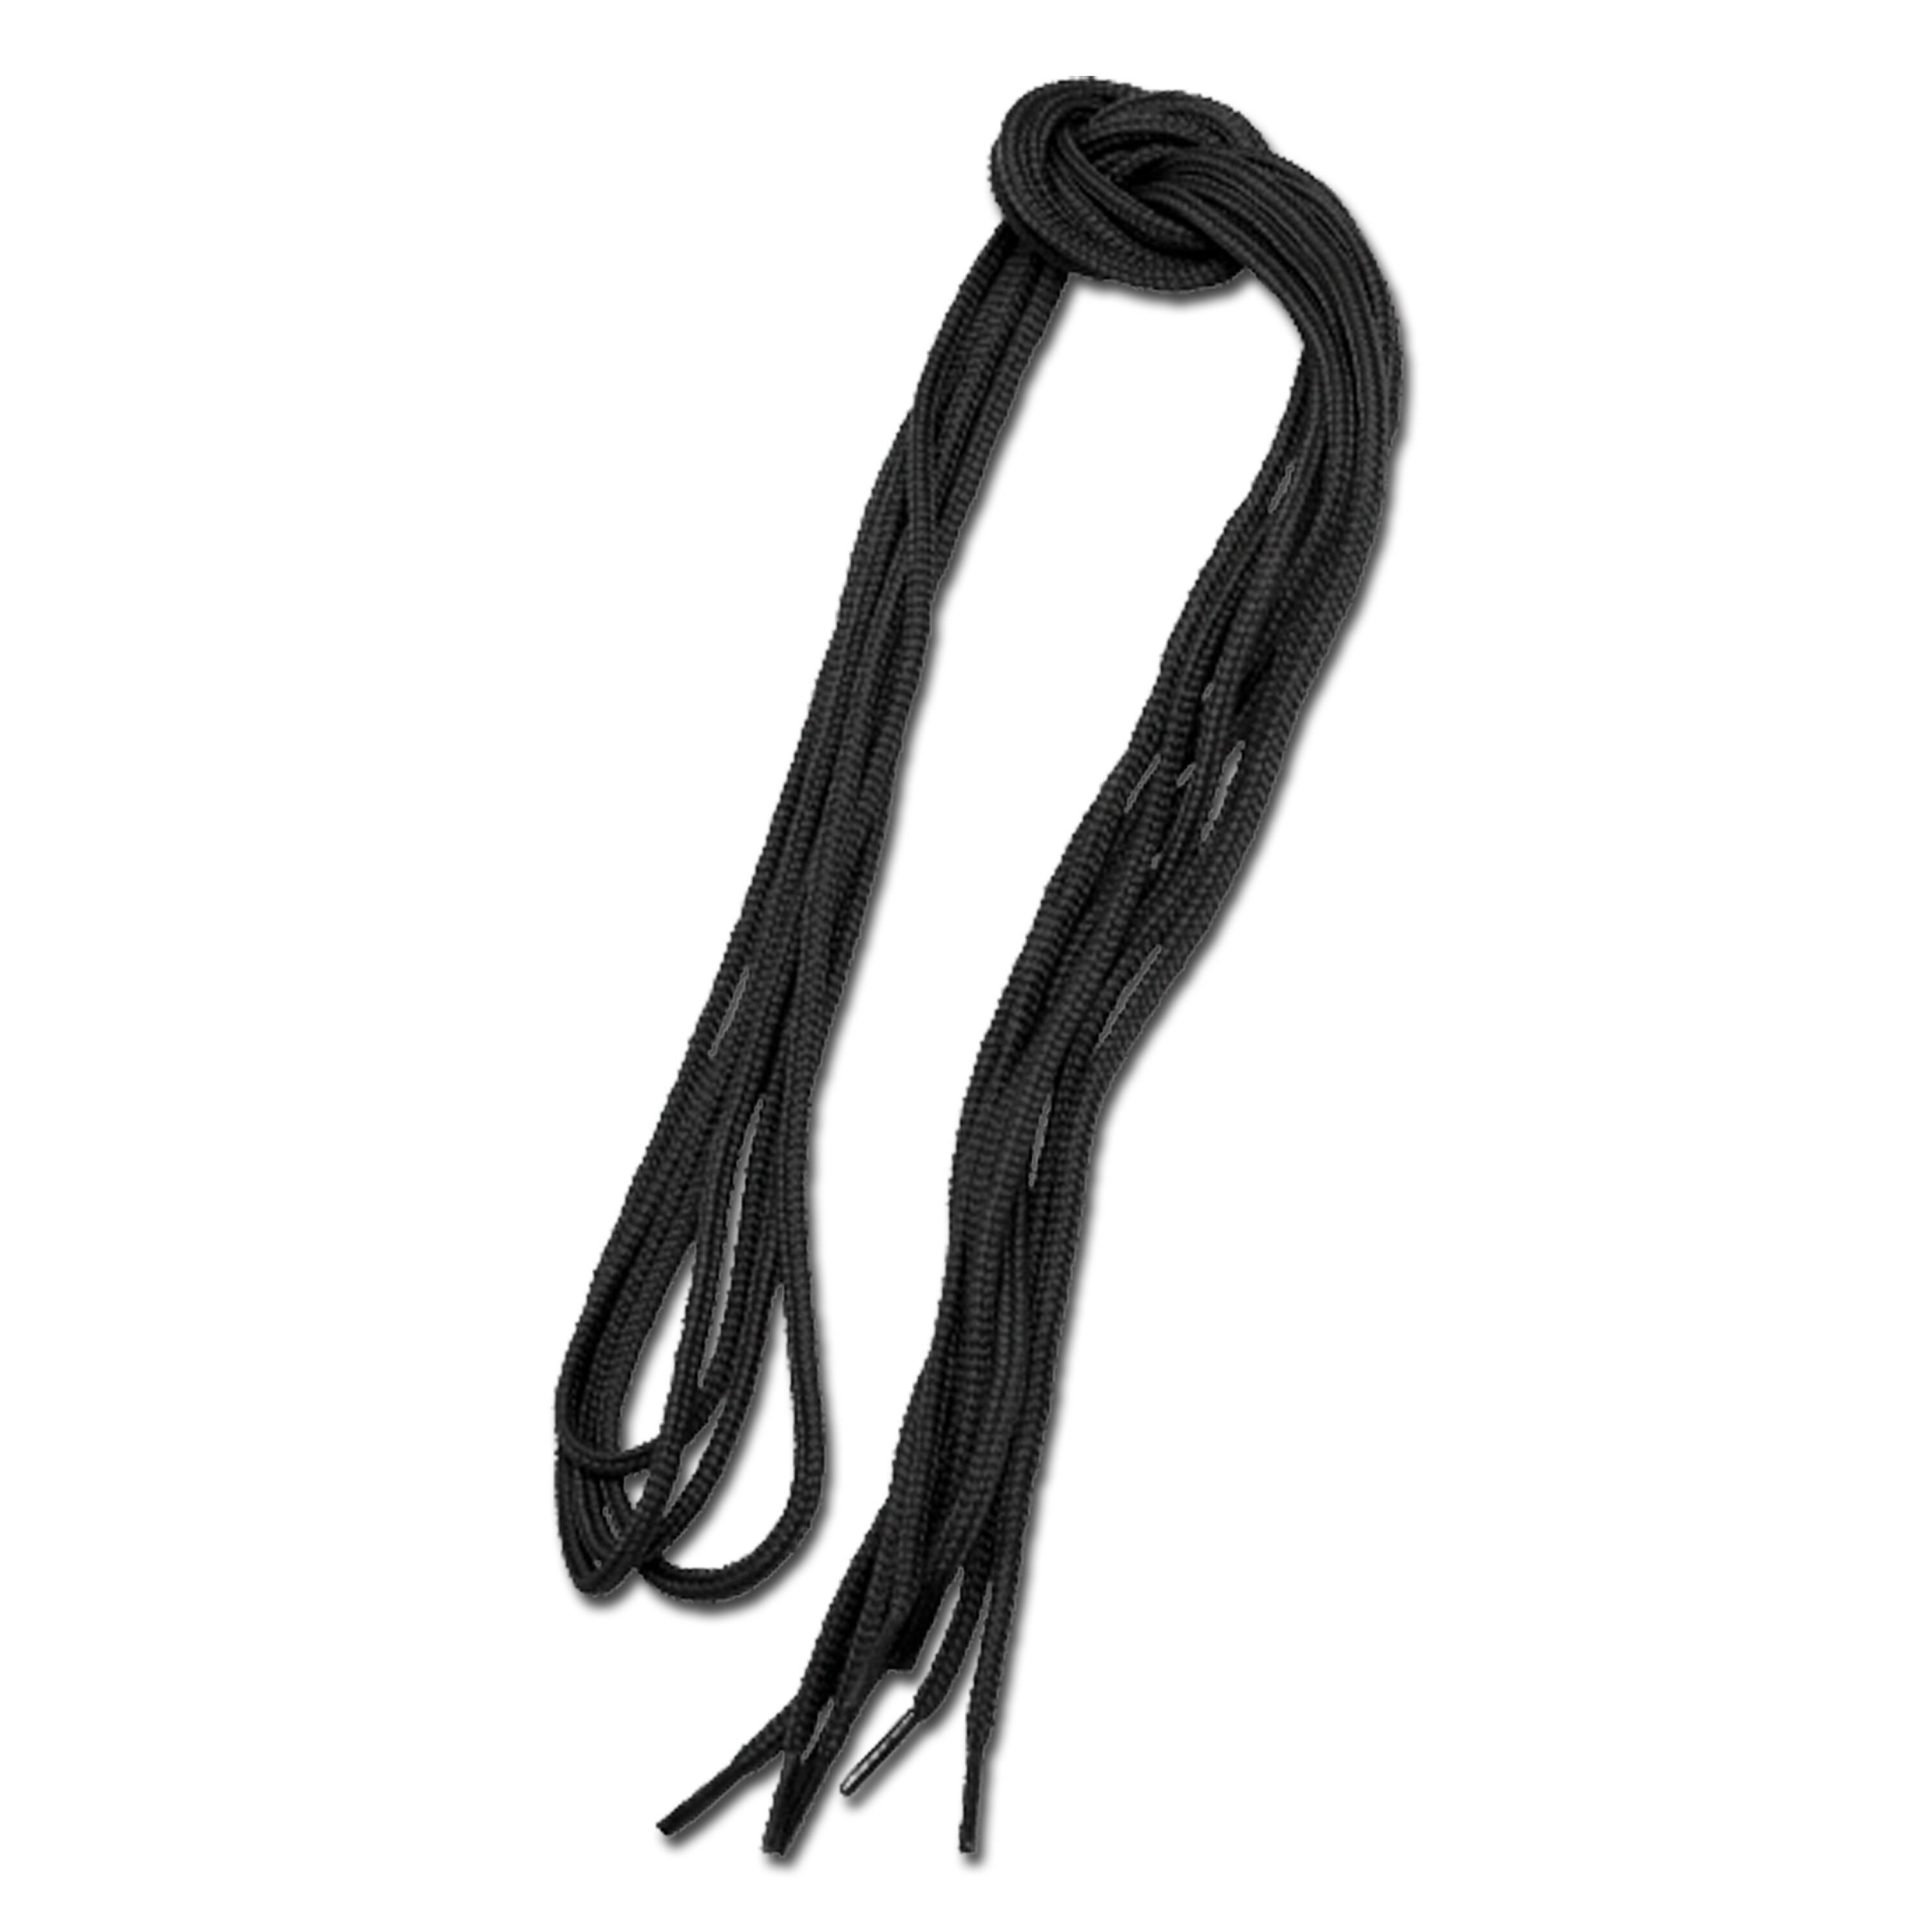 Shoelaces black 180 cm | Shoelaces black 180 cm | Shoe Care ...